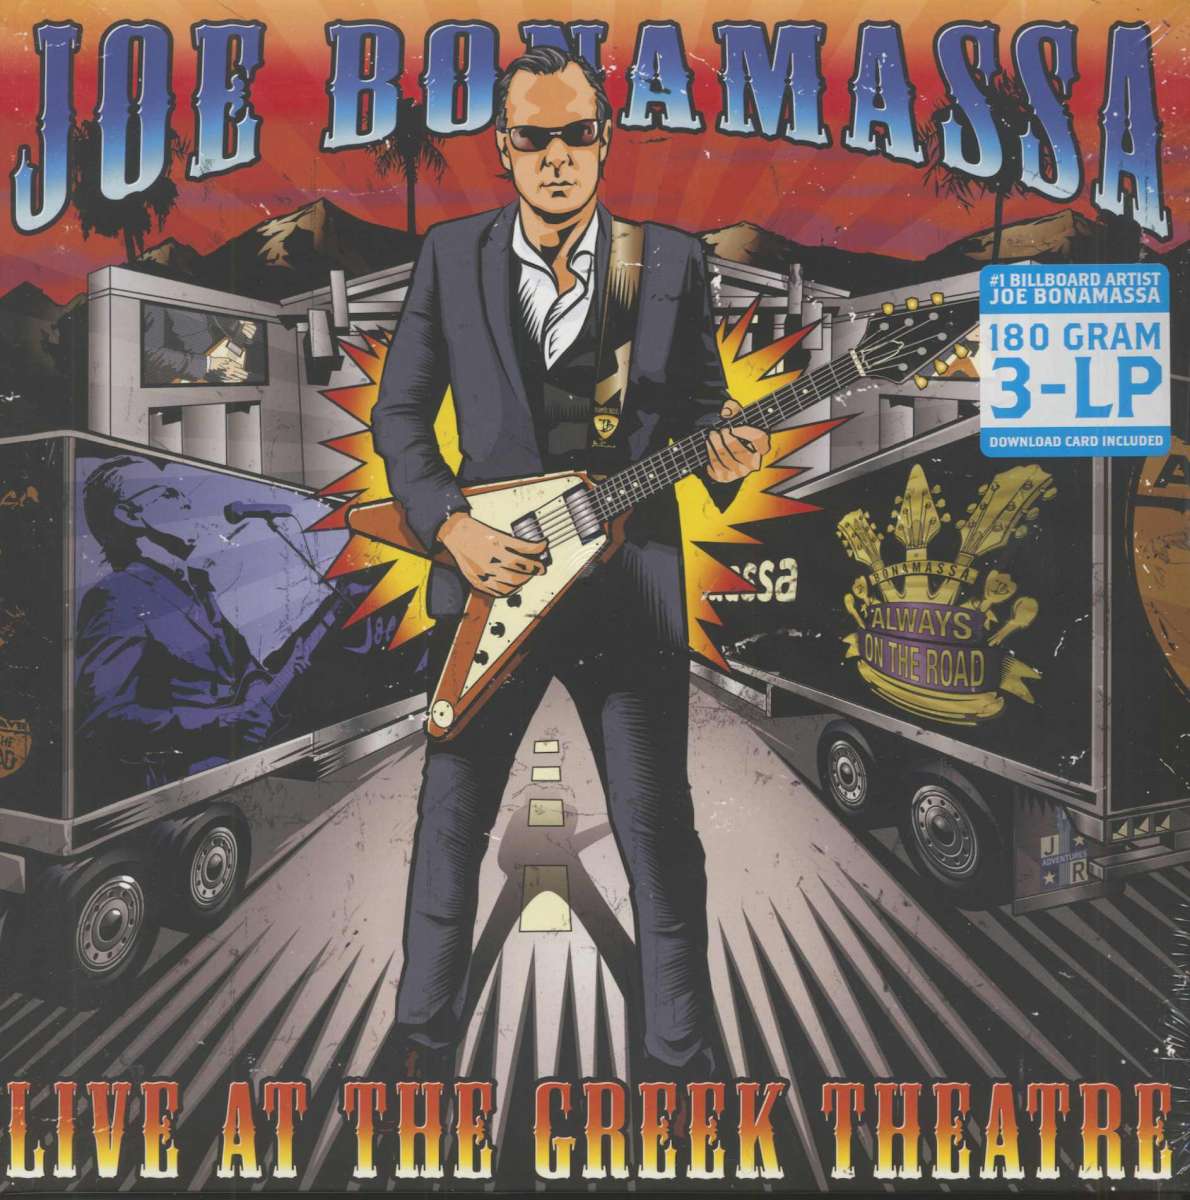 Joe Bonamassa LP: Live At The Greek Theatre (3-LP, Vinyl 180g) - Bear - Joe Bonamassa Live At The Greek Theatre